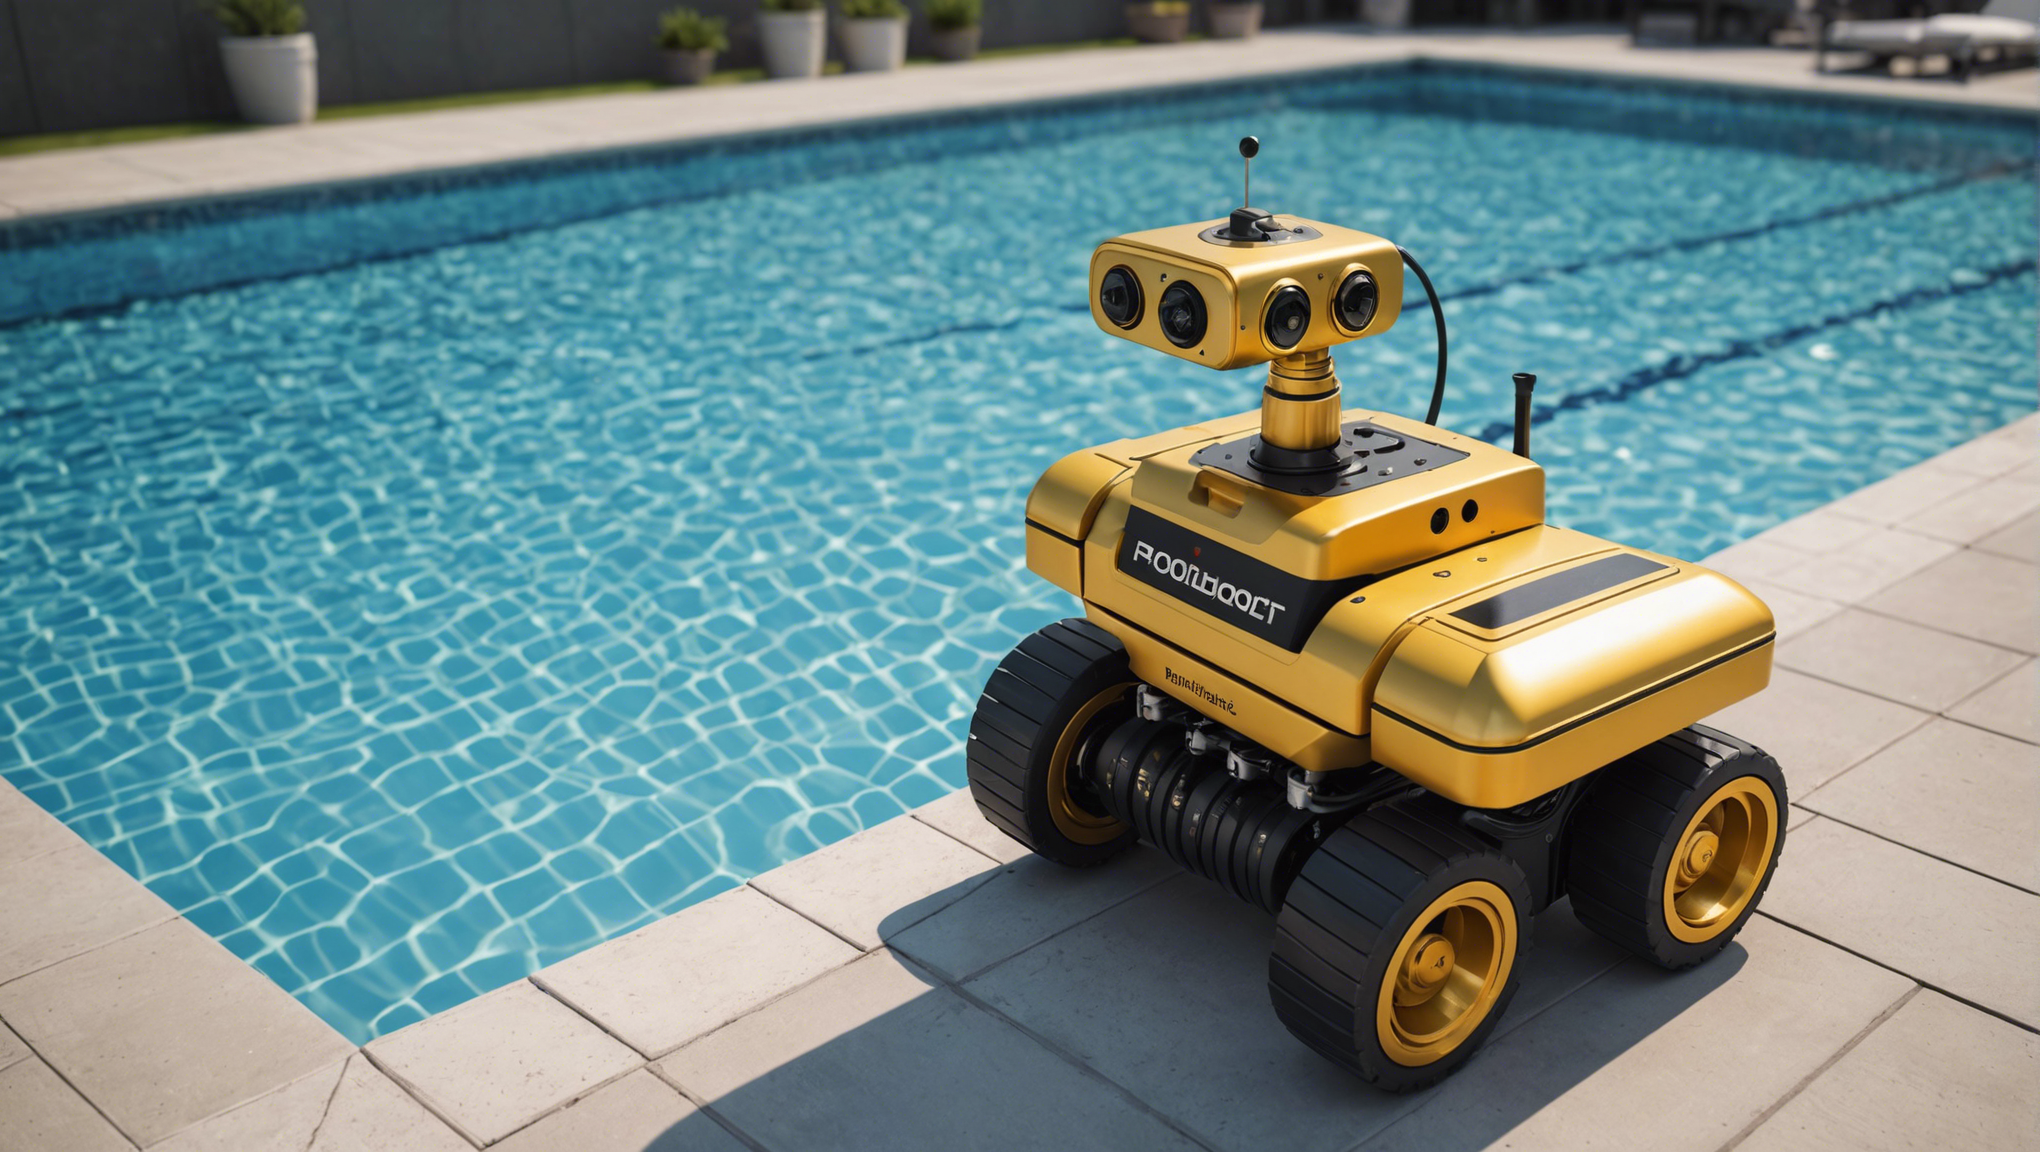 découvrez les règles d'or pour bien choisir un robot de piscine et profiter d'une baignade agréable tout au long de l'été. conseils et astuces pour trouver le robot de piscine idéal.